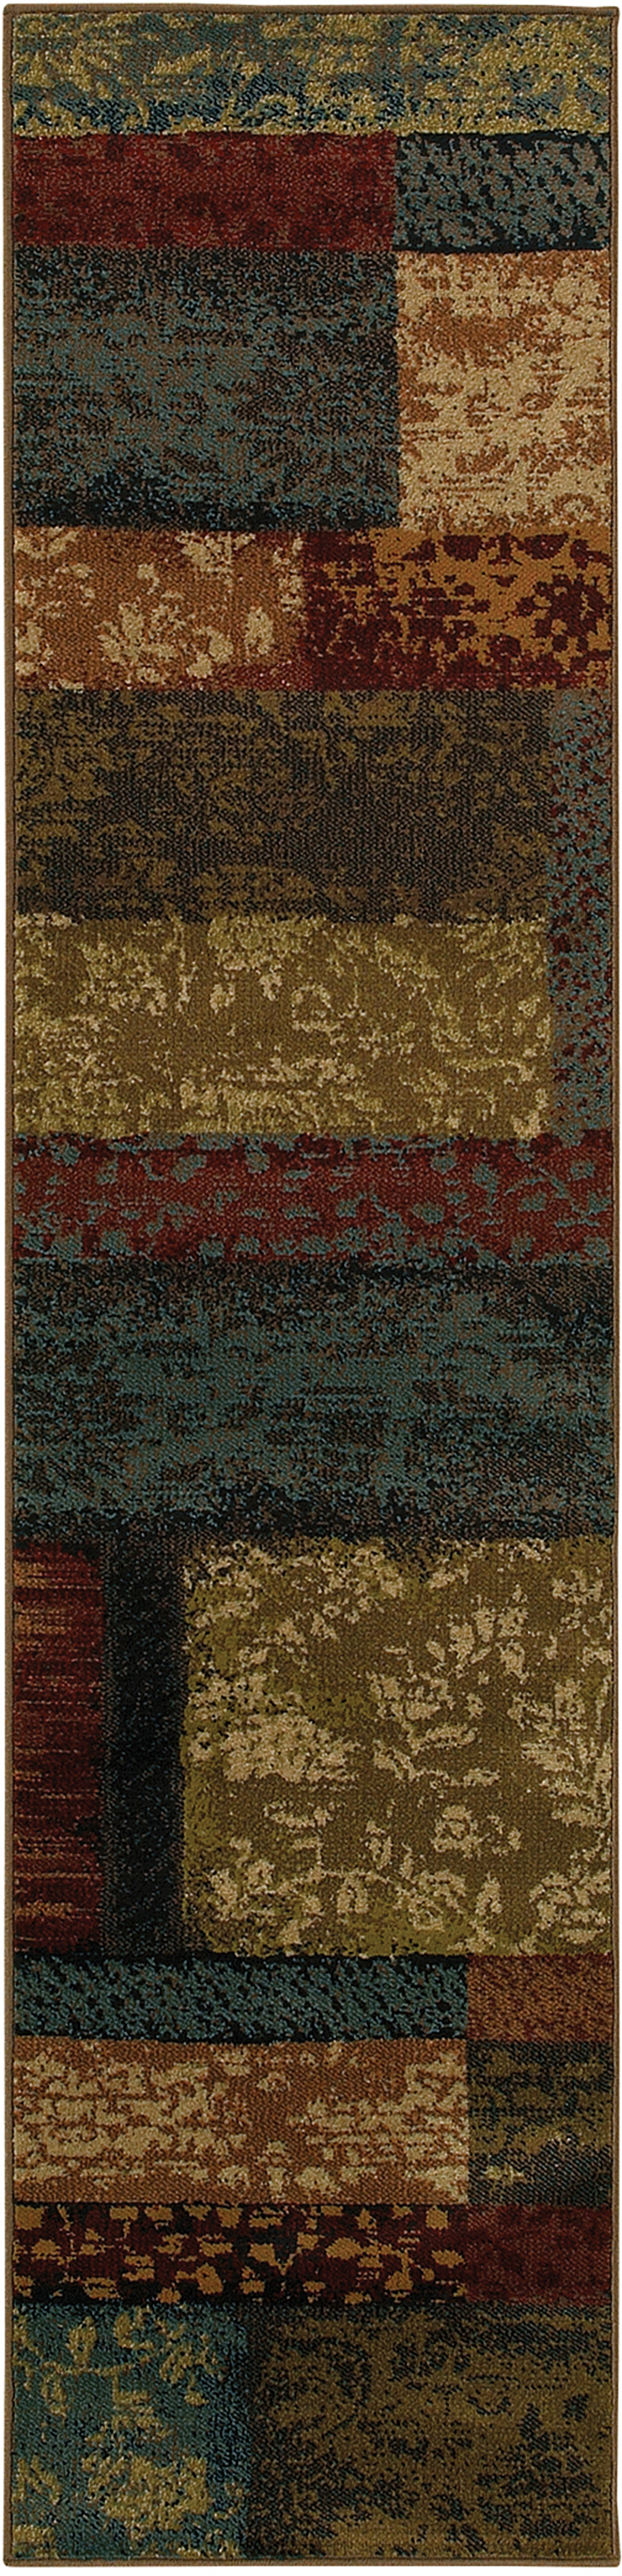 Oriental Weavers EMERSON 2480C Brown Rug